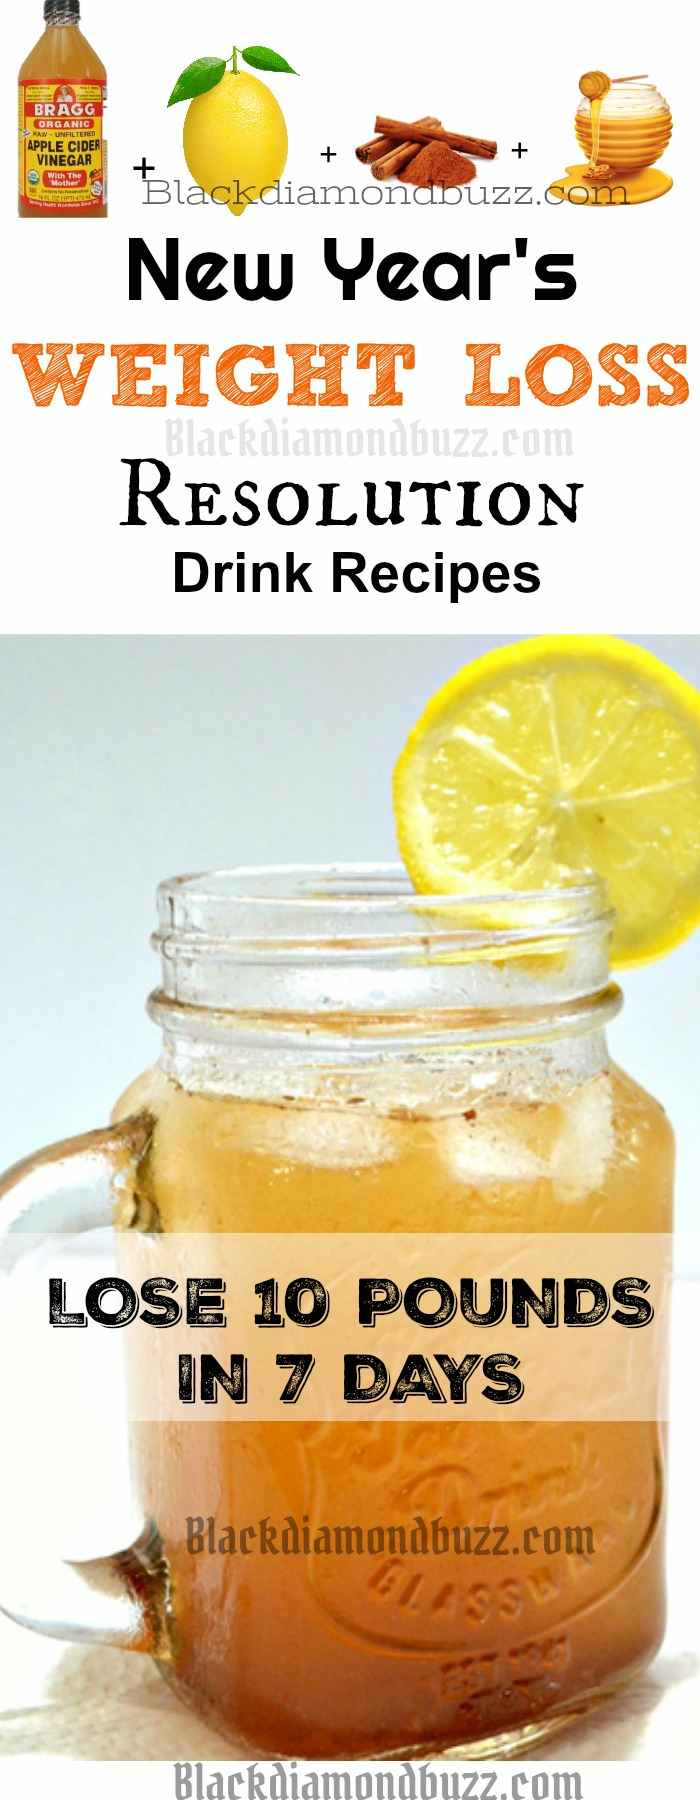 Weight Loss Detox Drink Recipes
 DIY Apple Cider Vinegar Detox Drink Recipe for Fat Burning